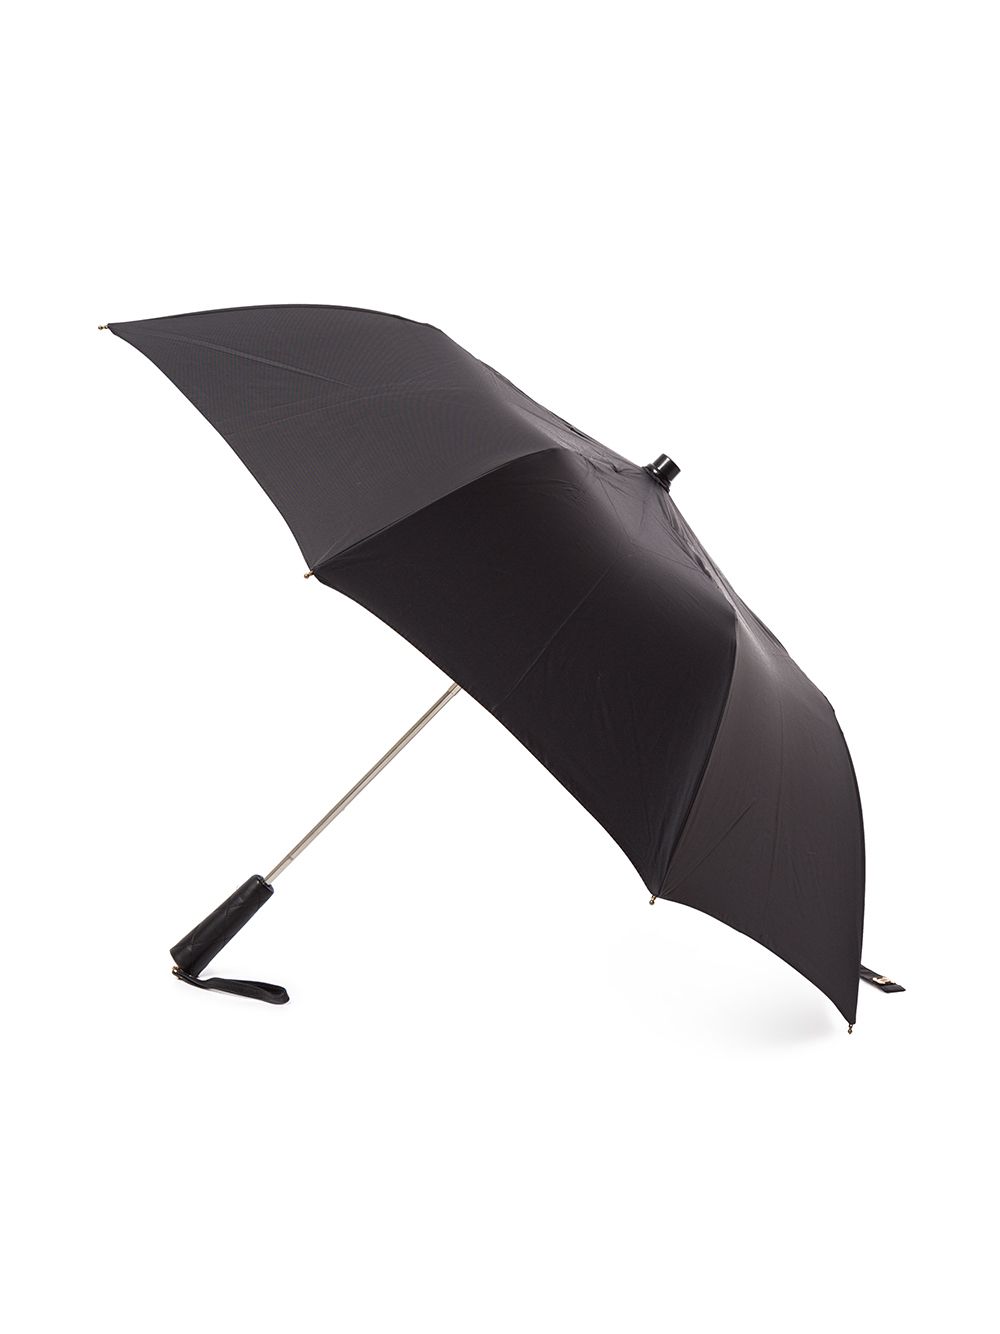 coco chanel umbrella